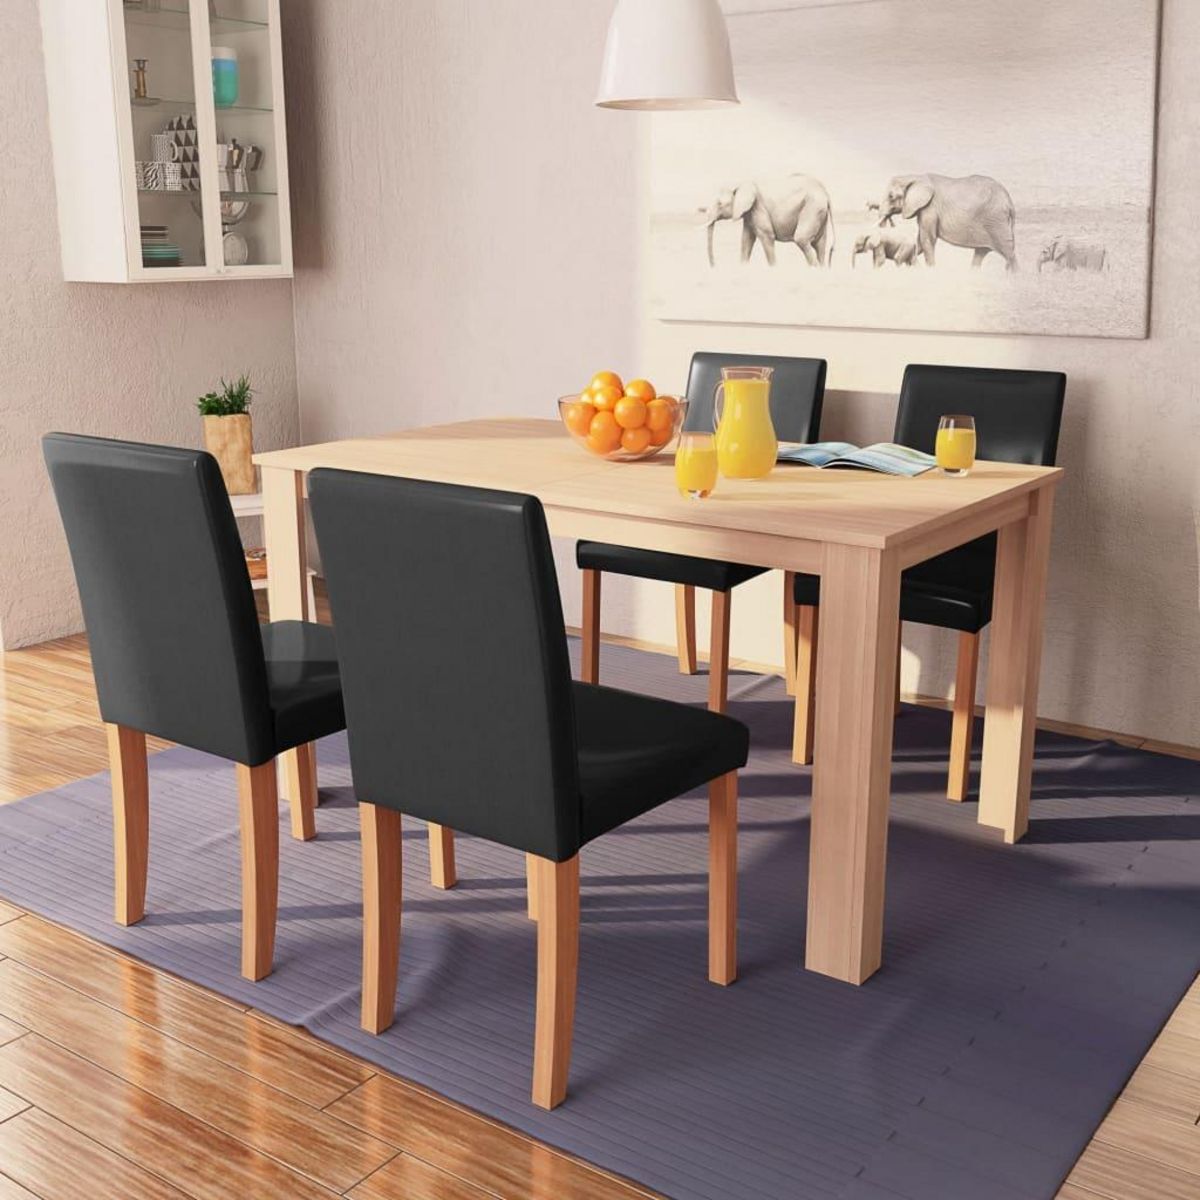 VIDAXL Table et chaises 5 pcs Cuir synthetique Chene Noir